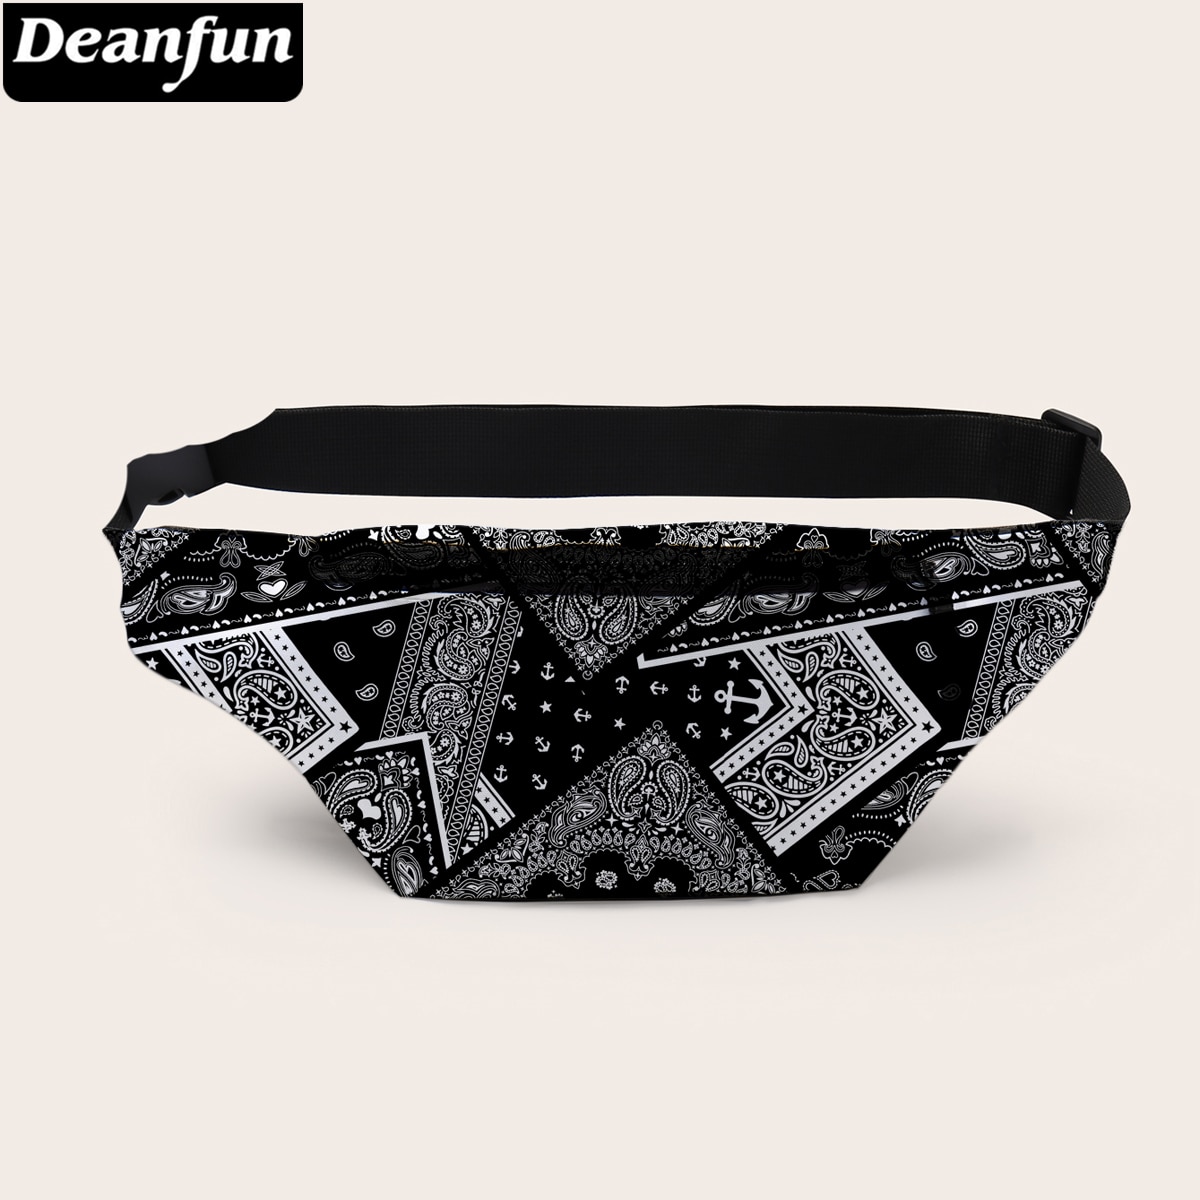 Deanfun Heuptas 3D Gedrukt Bruin Fanny Pack Voor Vrouwen Portable Bag Voor Mannen D18054